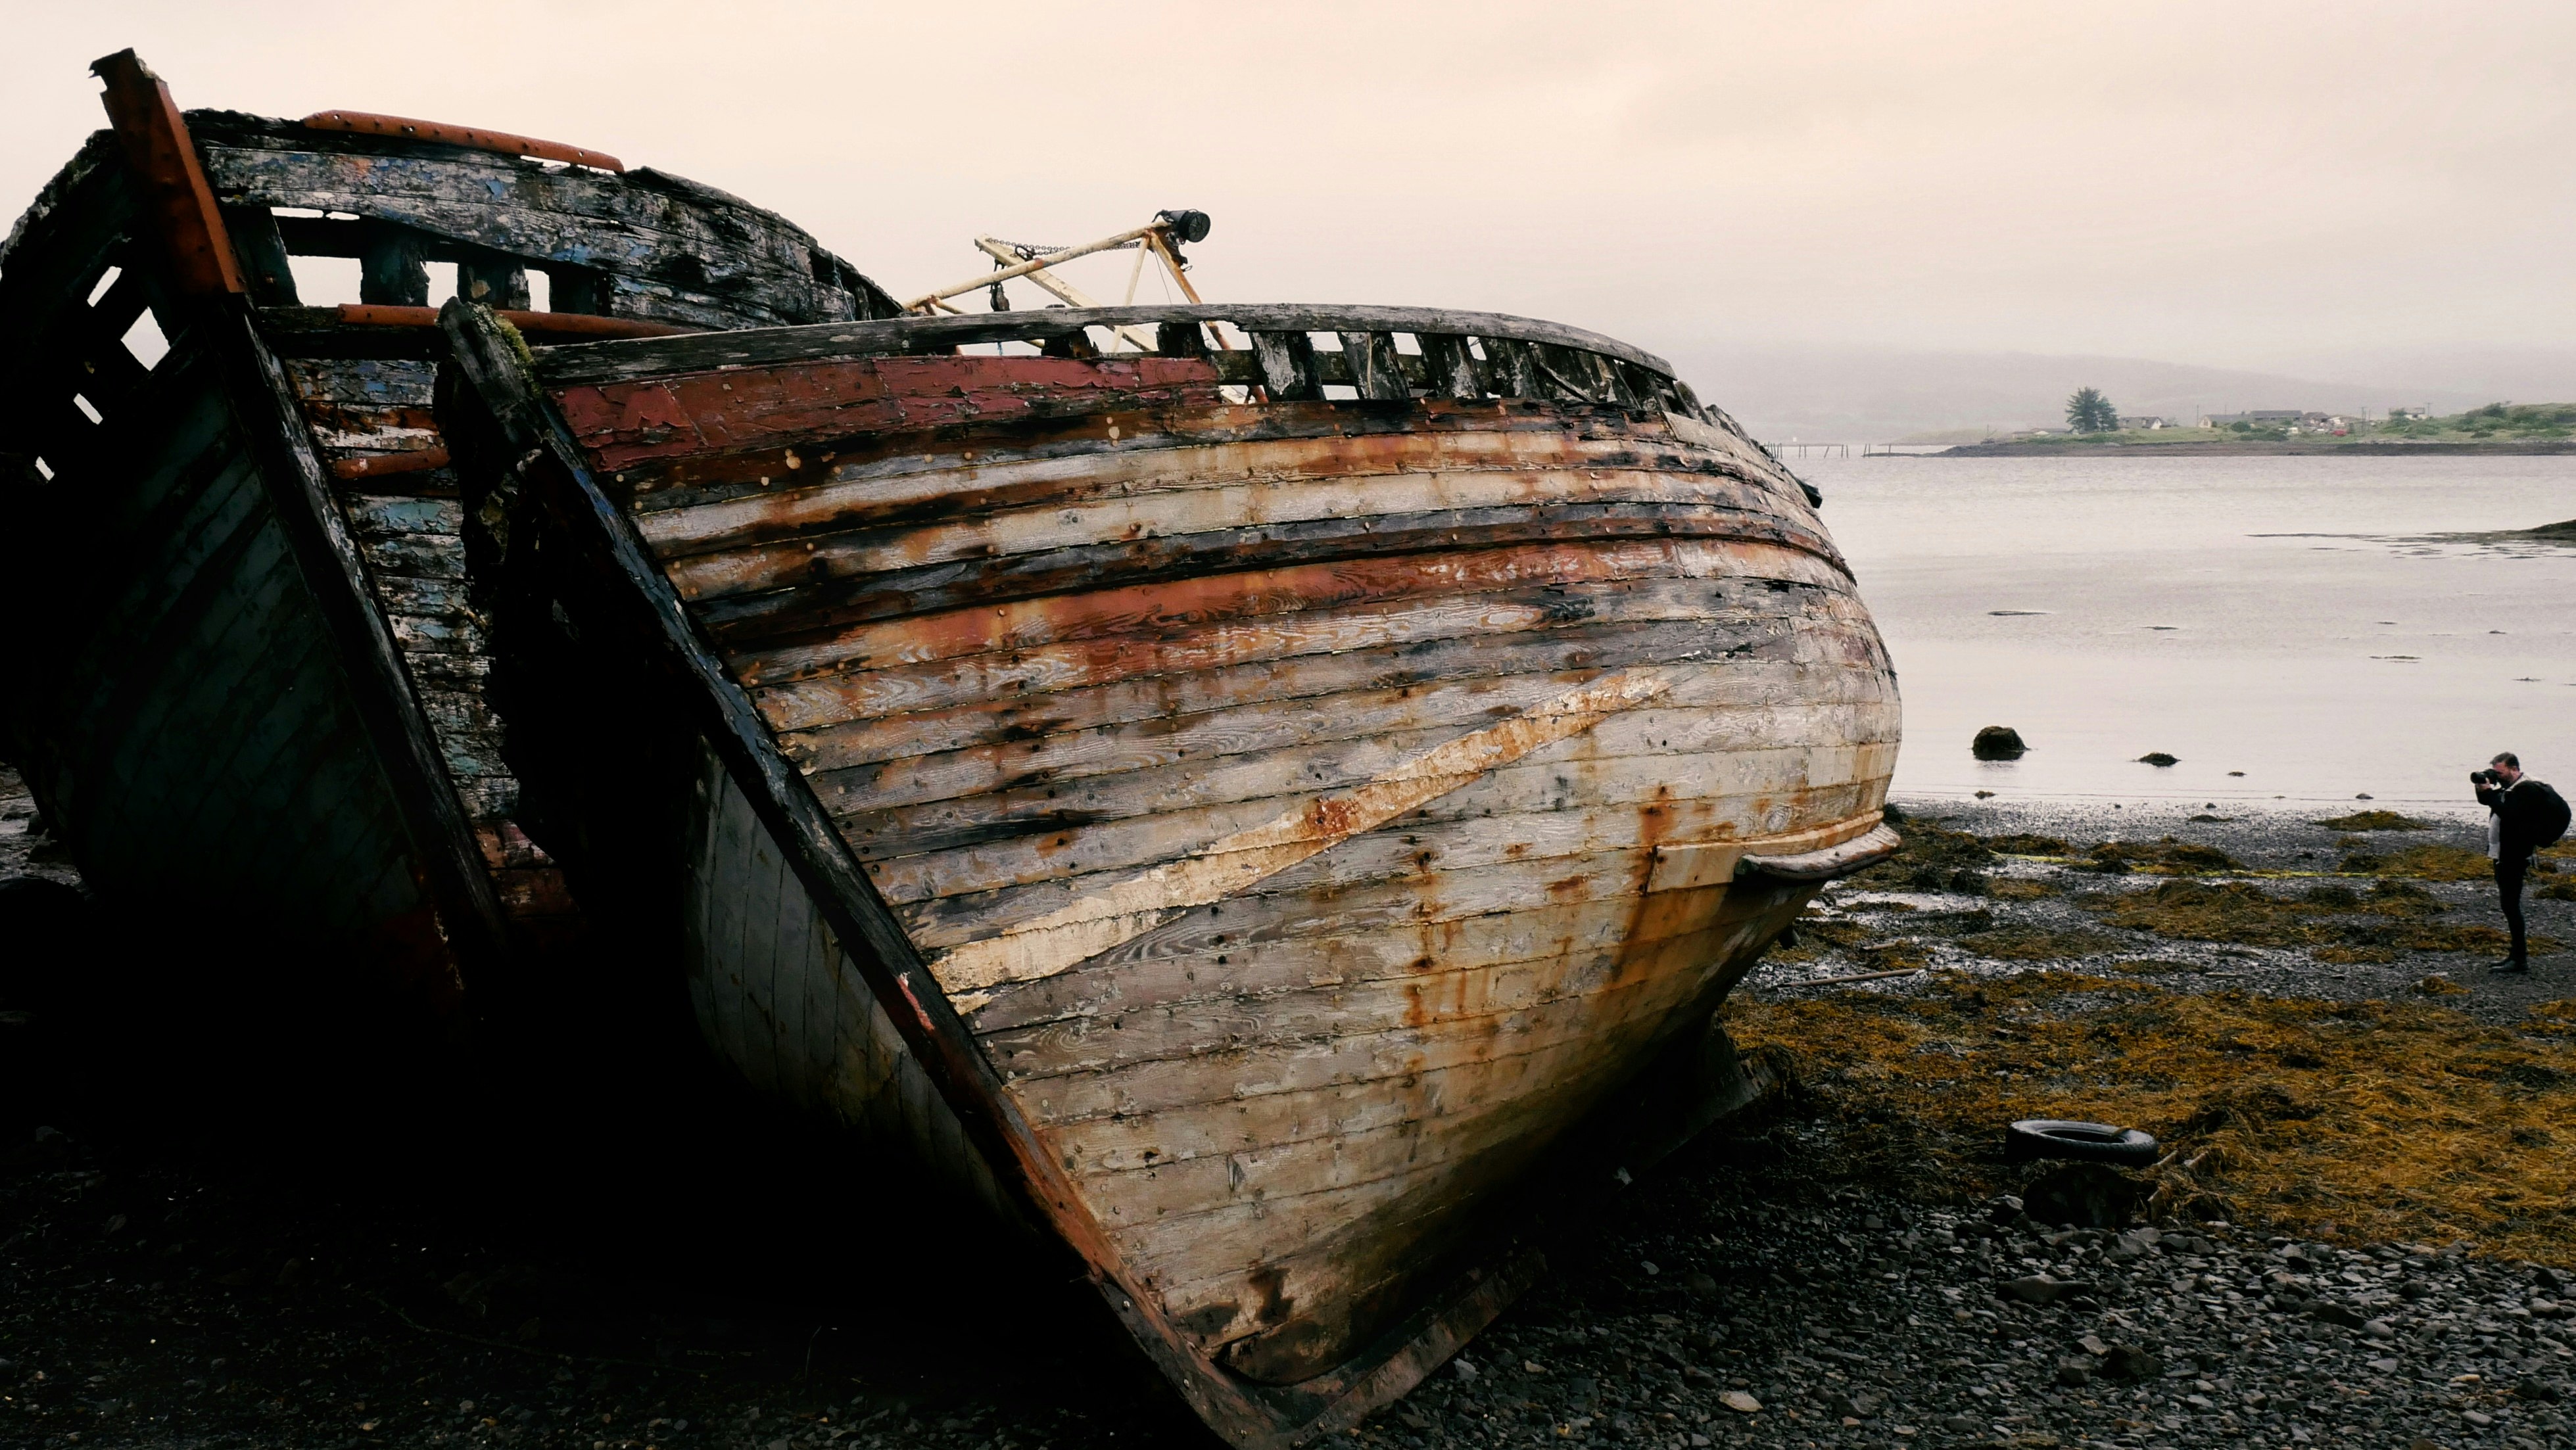 Abandoned - Isle of Mull